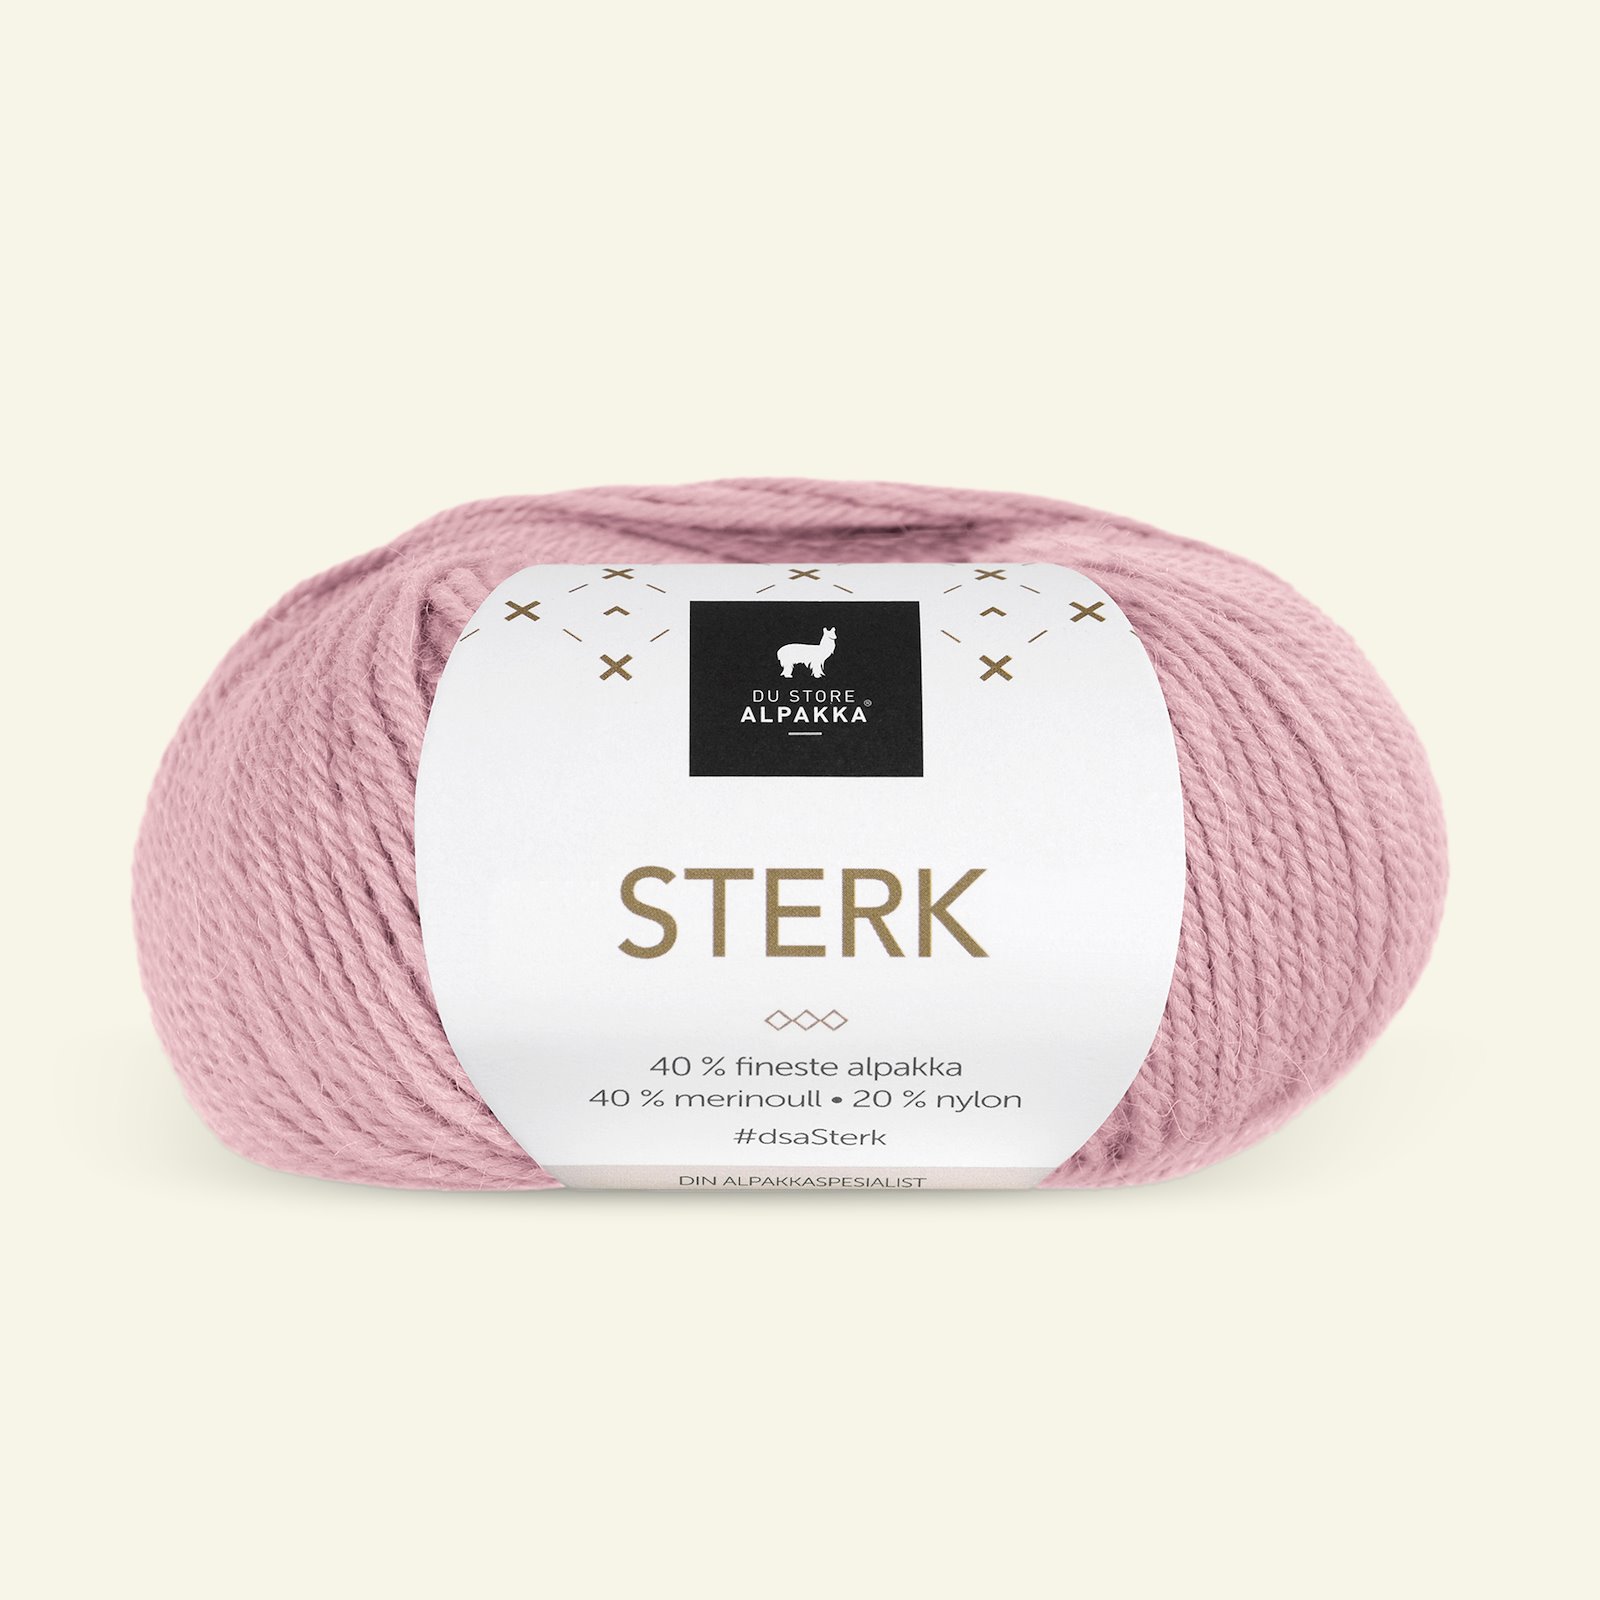 Du Store Alpakka, alpaca merino blandingsgarn, "Sterk", støvet rosa (850) 90000676_pack